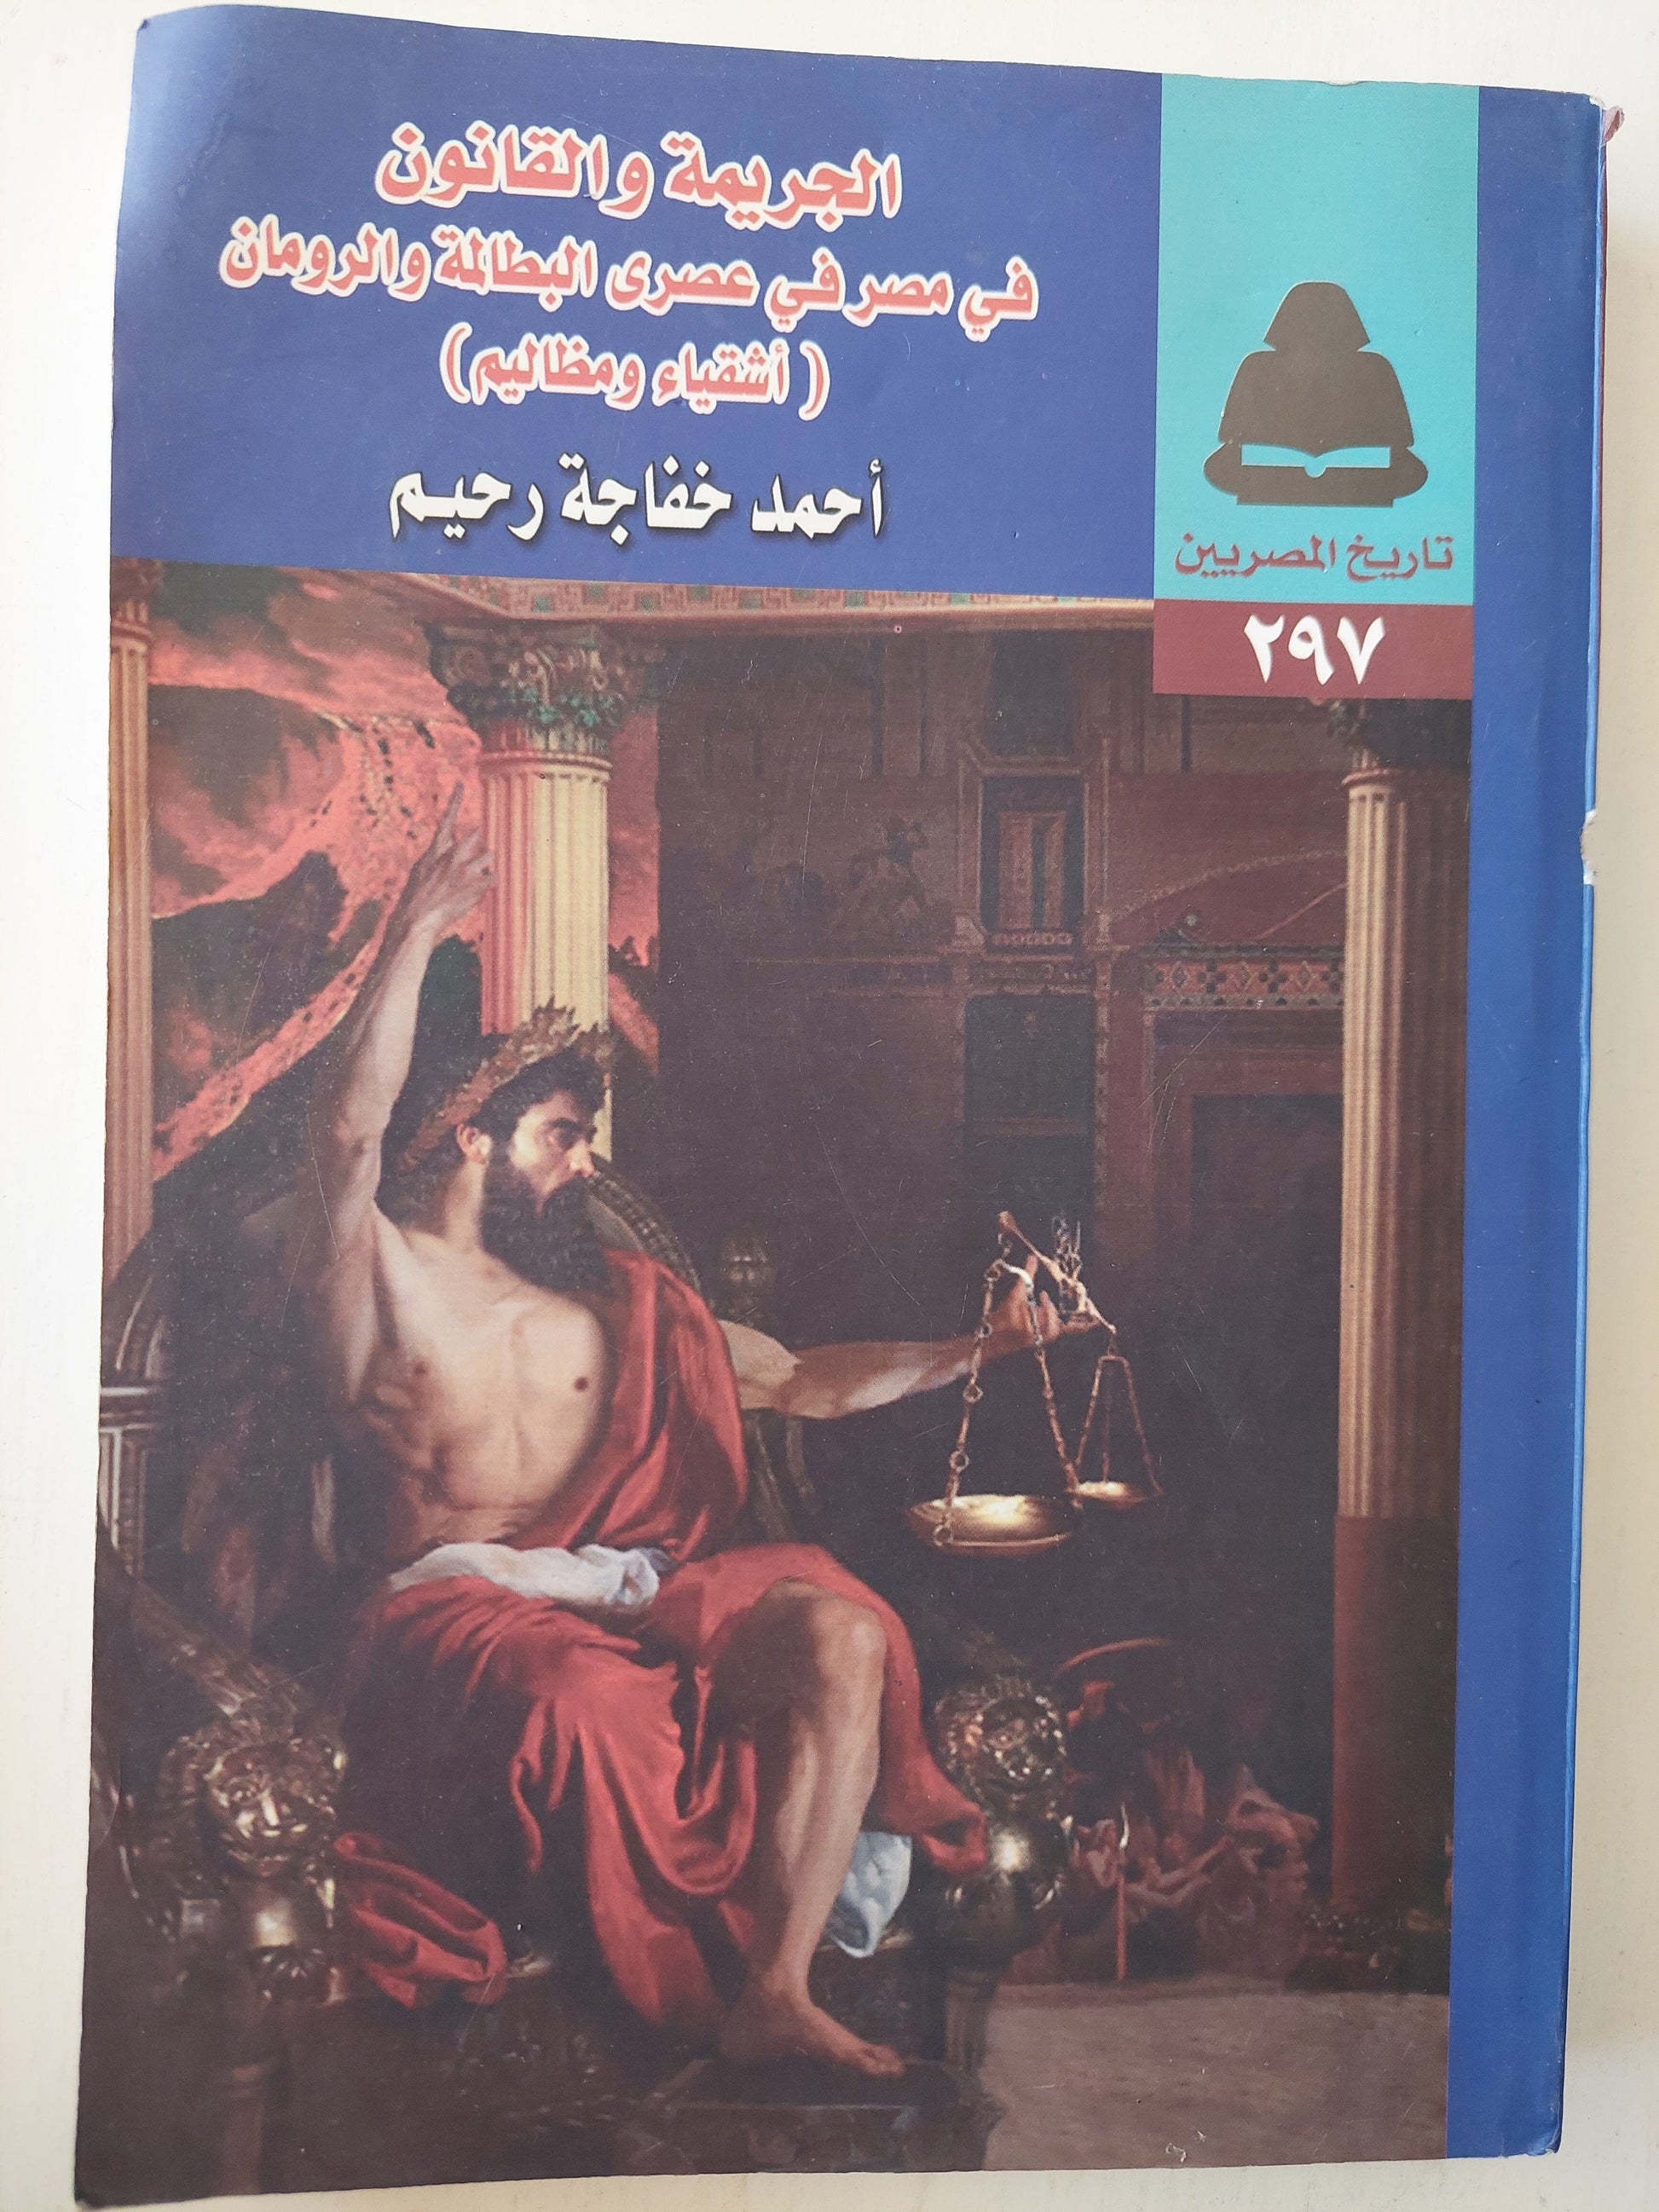 الجريمة والقانون في مصر في عصري البطالمة والرومان (أشقياء ومظاليم) كتاب المكتبة الفلسفية 